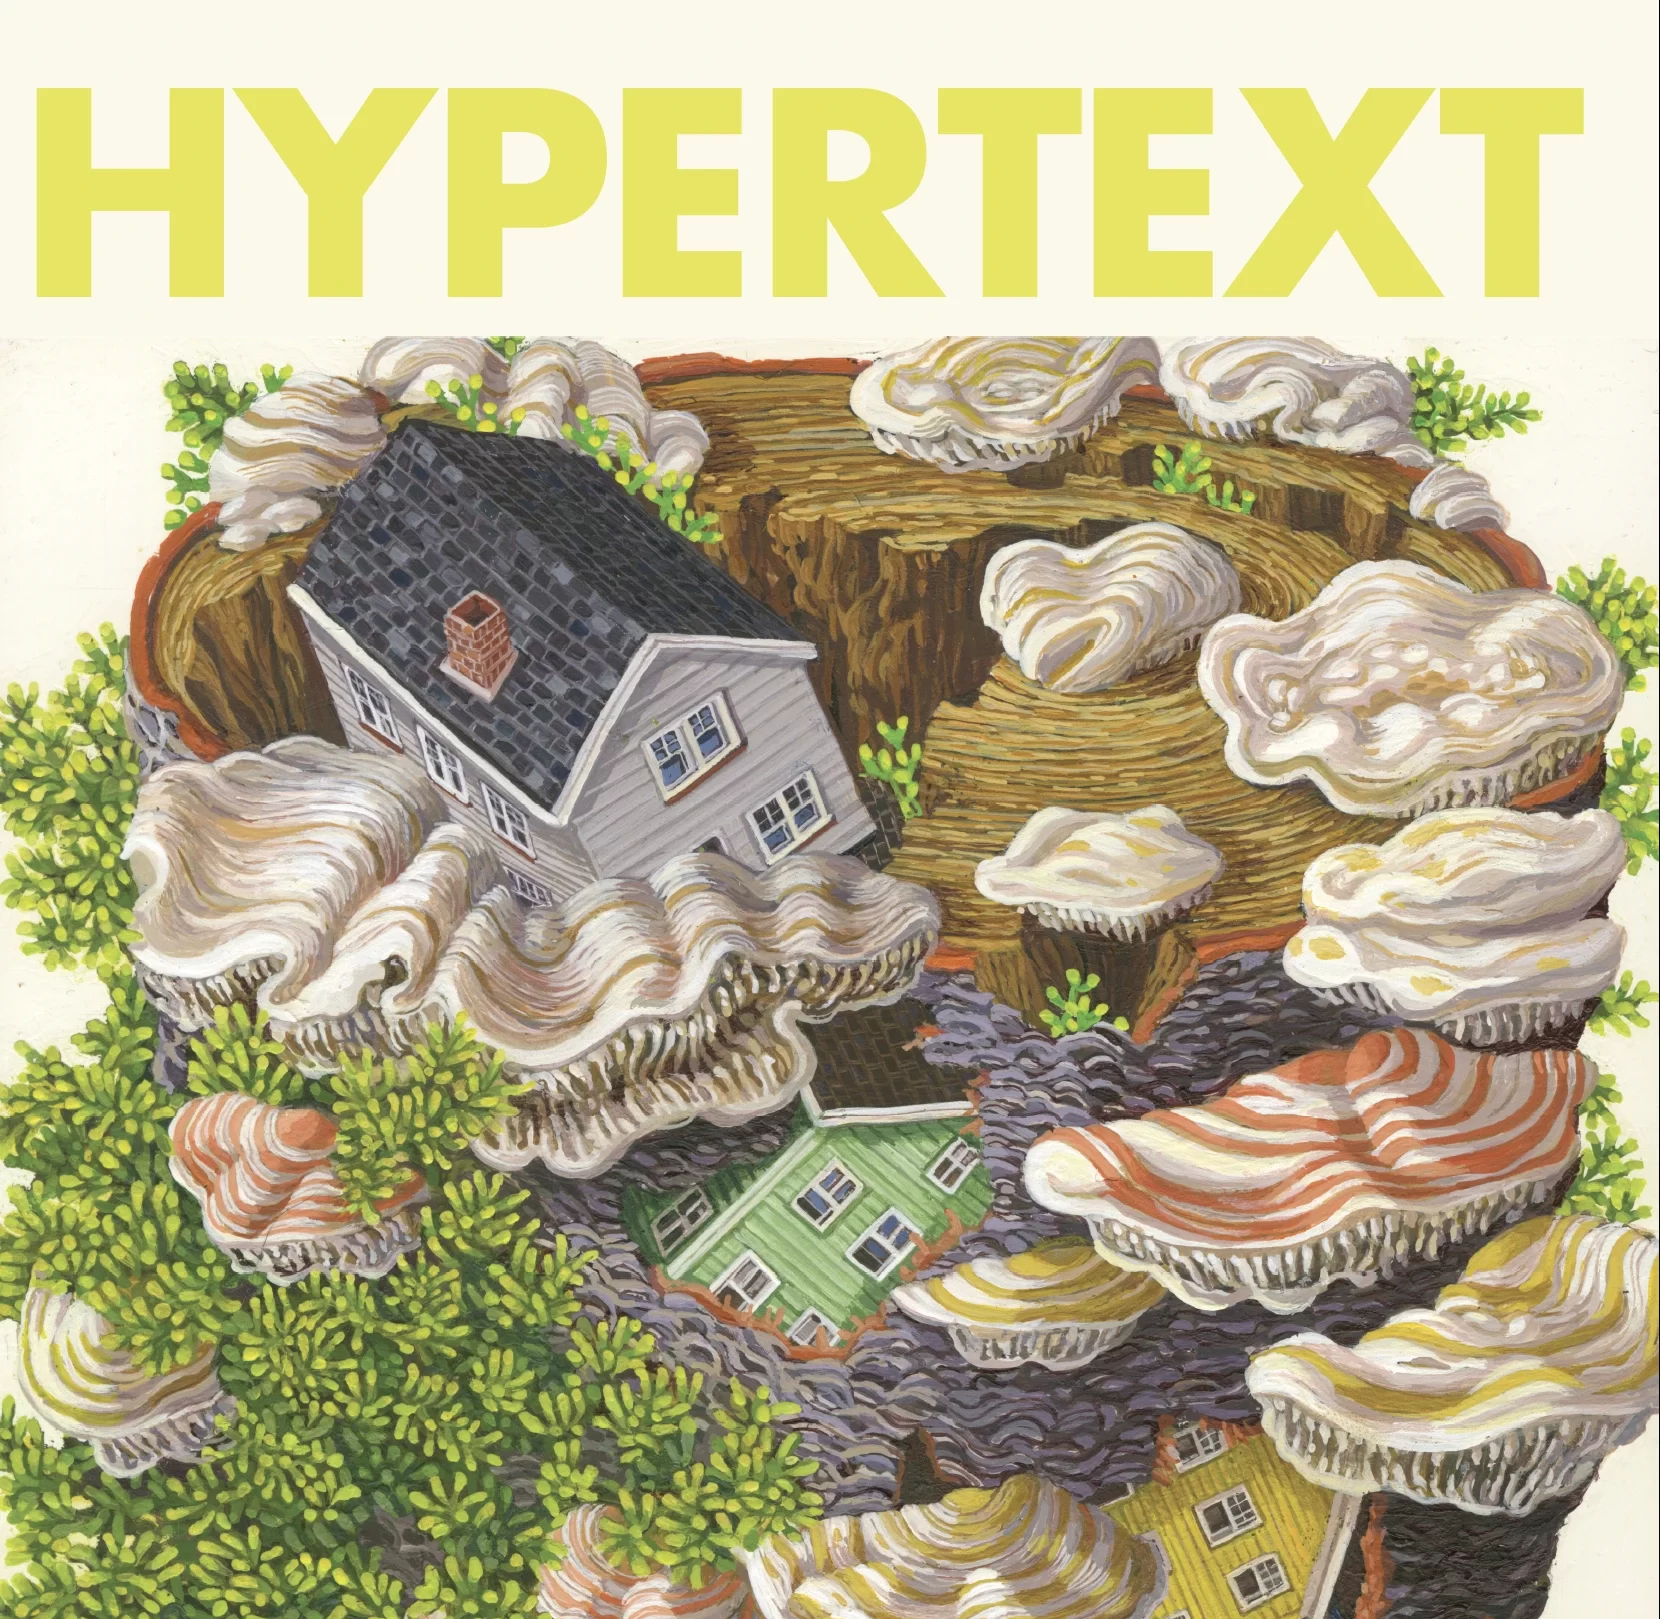 Hypertext Review Fall/Winter 2020